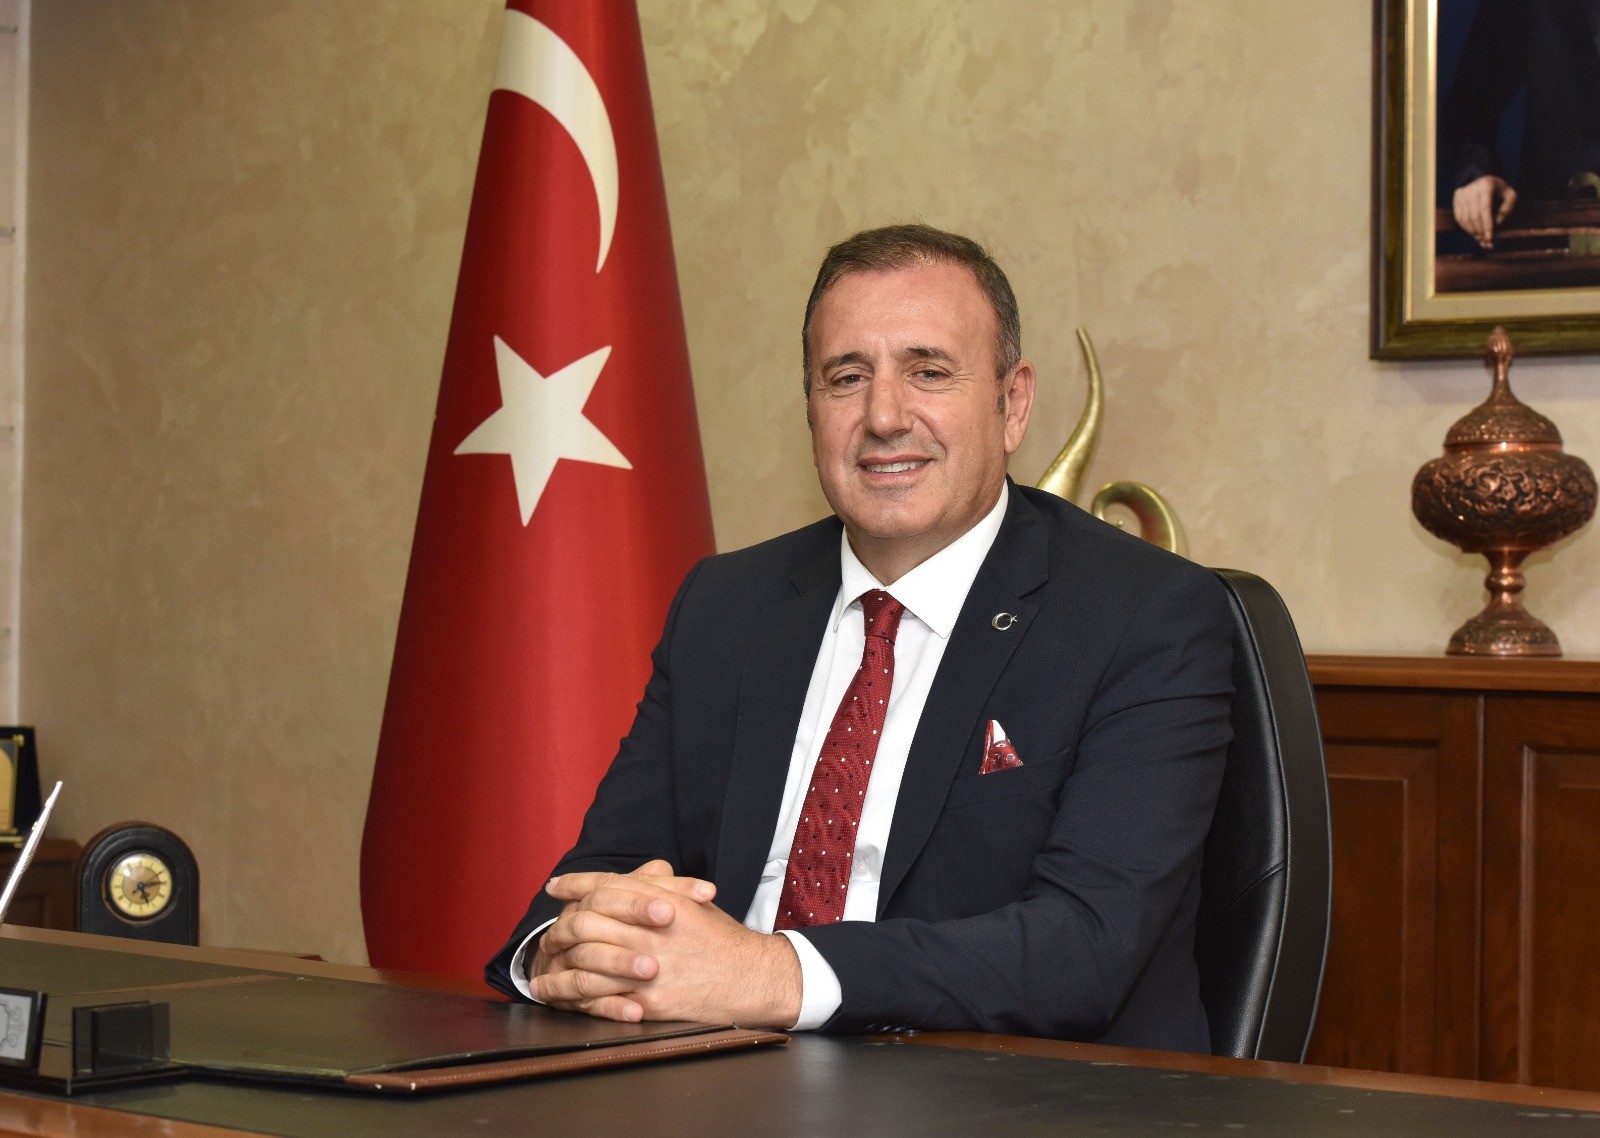 Avrupa pazarına girmek isteyen Trabzon firmalarına çağrı yaptı: "100 şirket satılığa çıkarıldı"